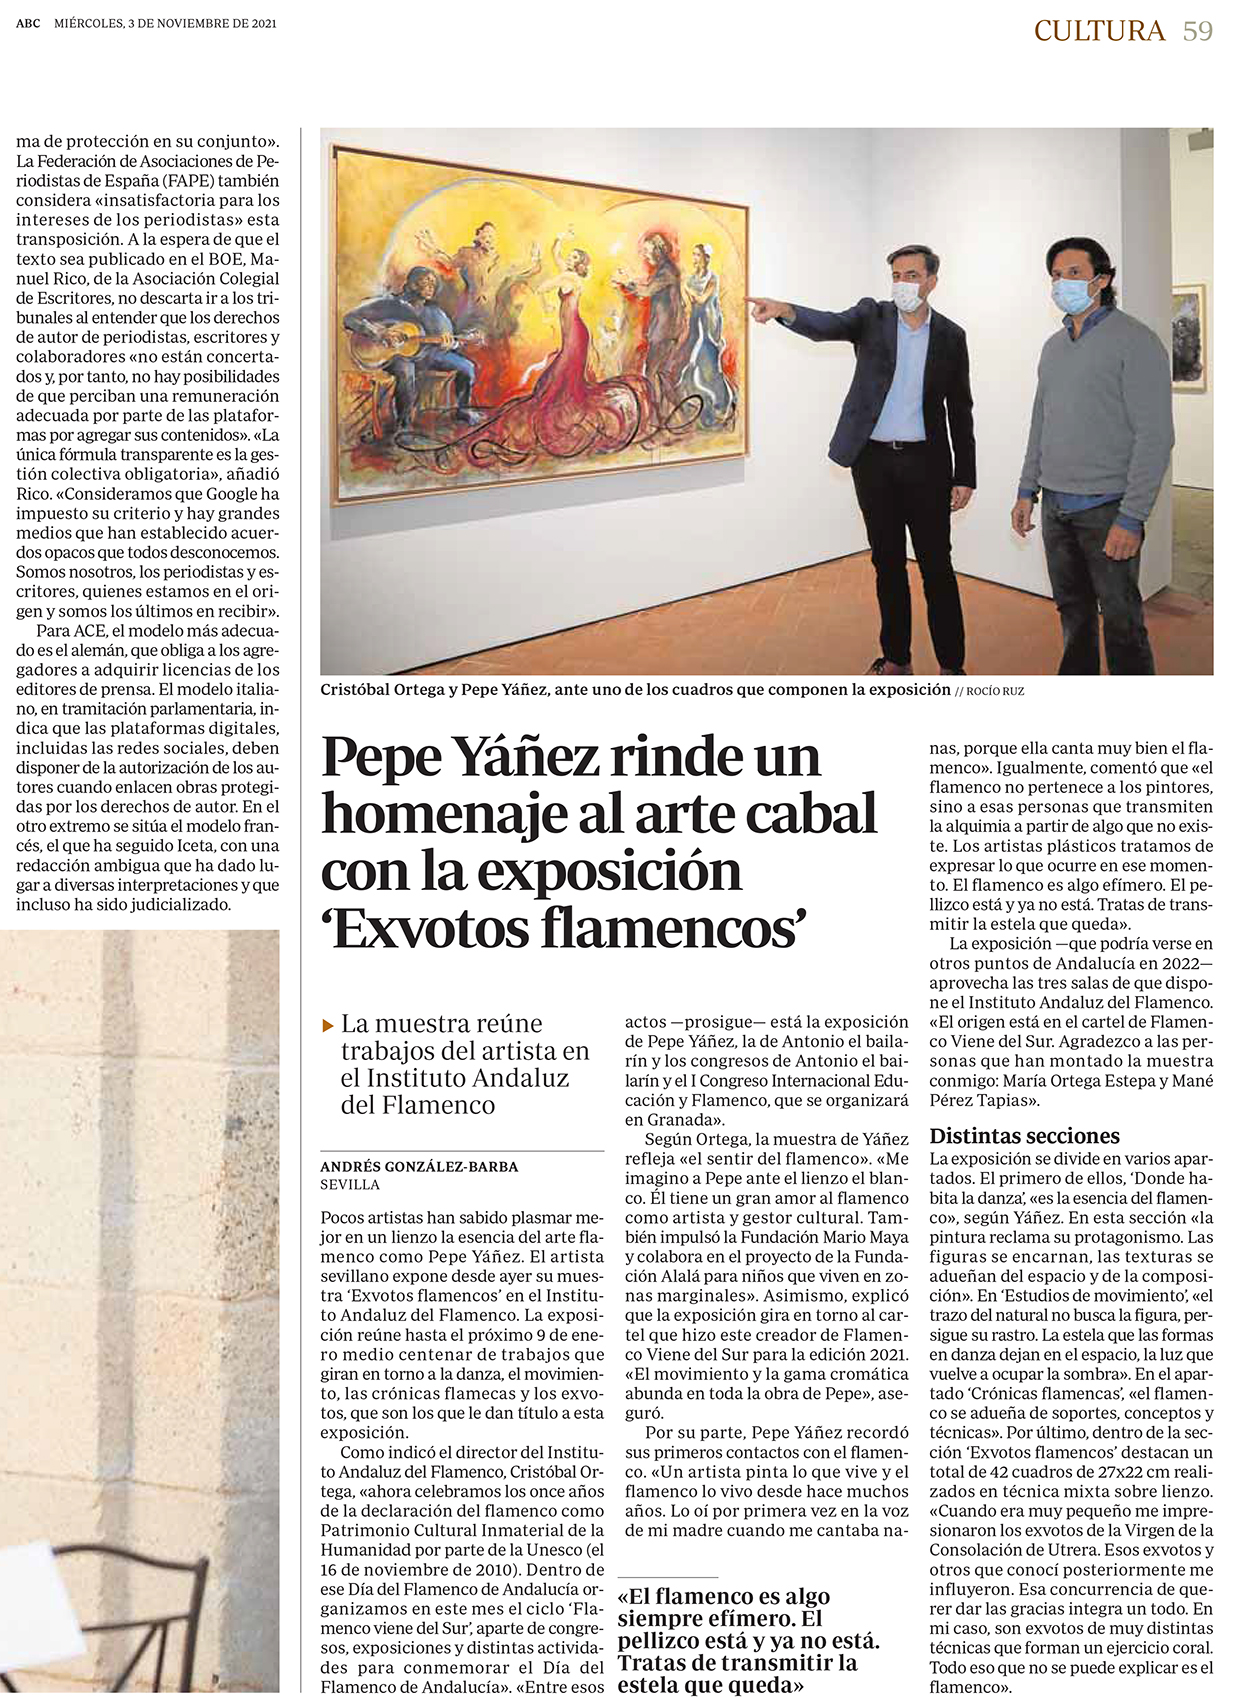 Pepe Yáñez rinde un homenaje plástico al arte cabal con la exposición ‘Exvotos flamencos’ en Sevilla